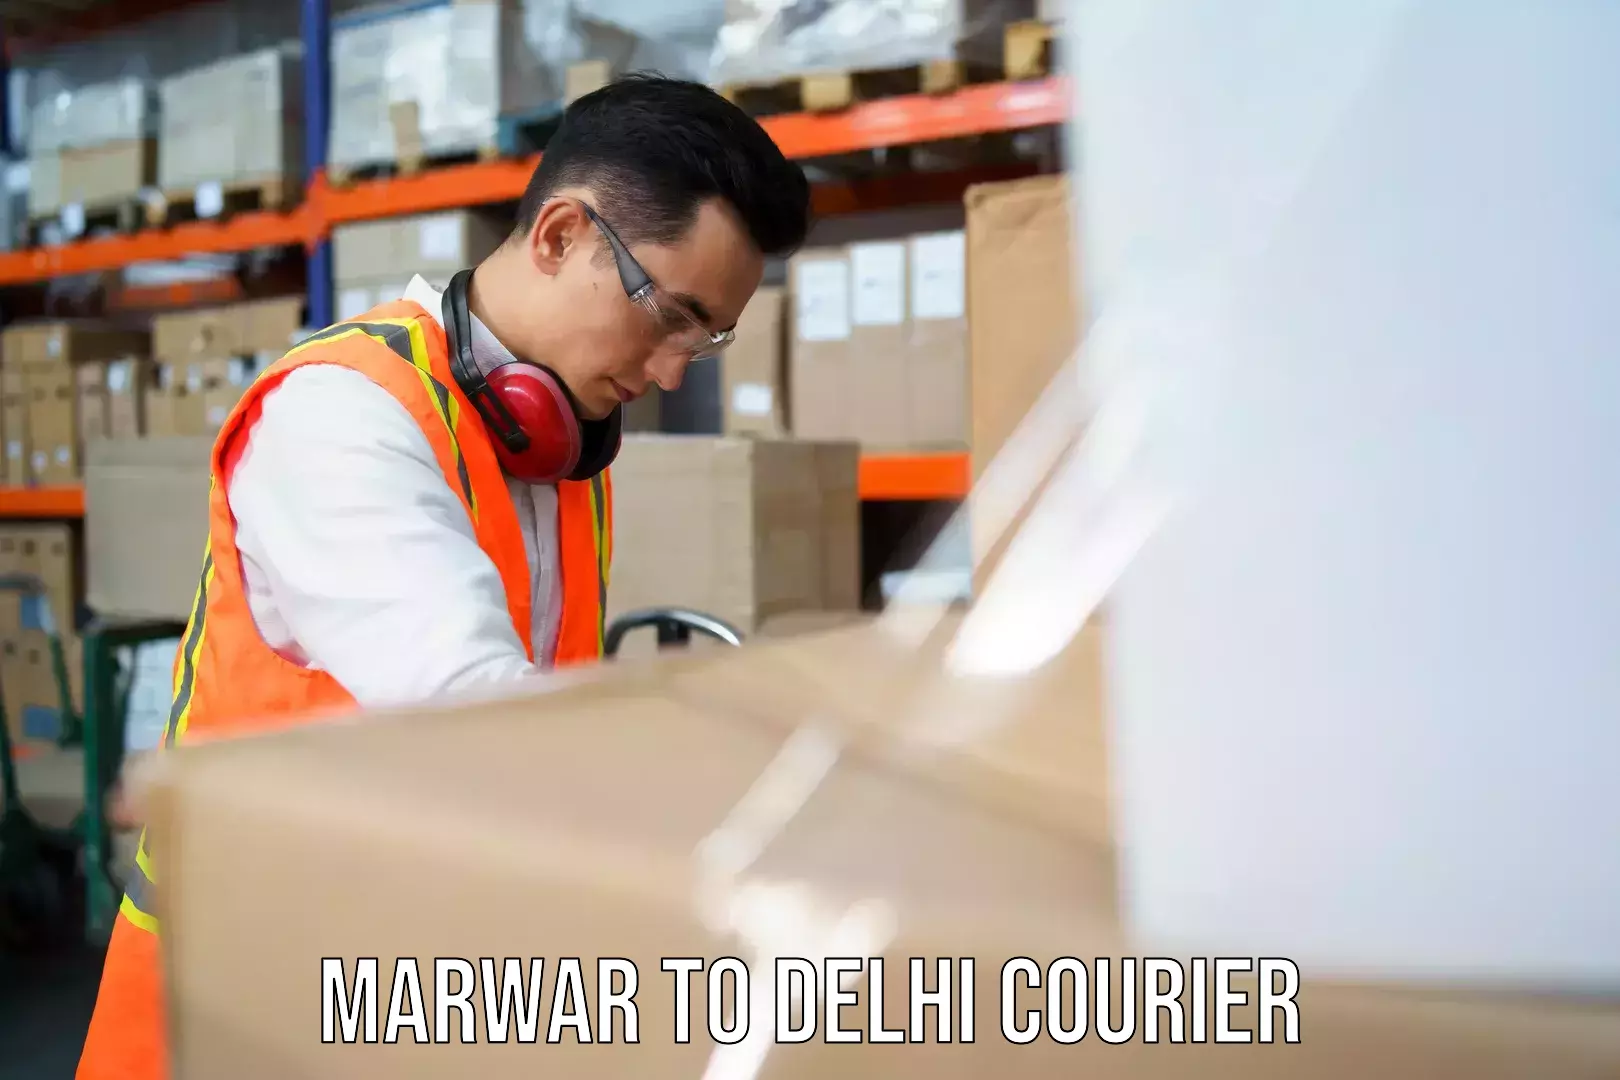 Return courier service Marwar to Indraprastha